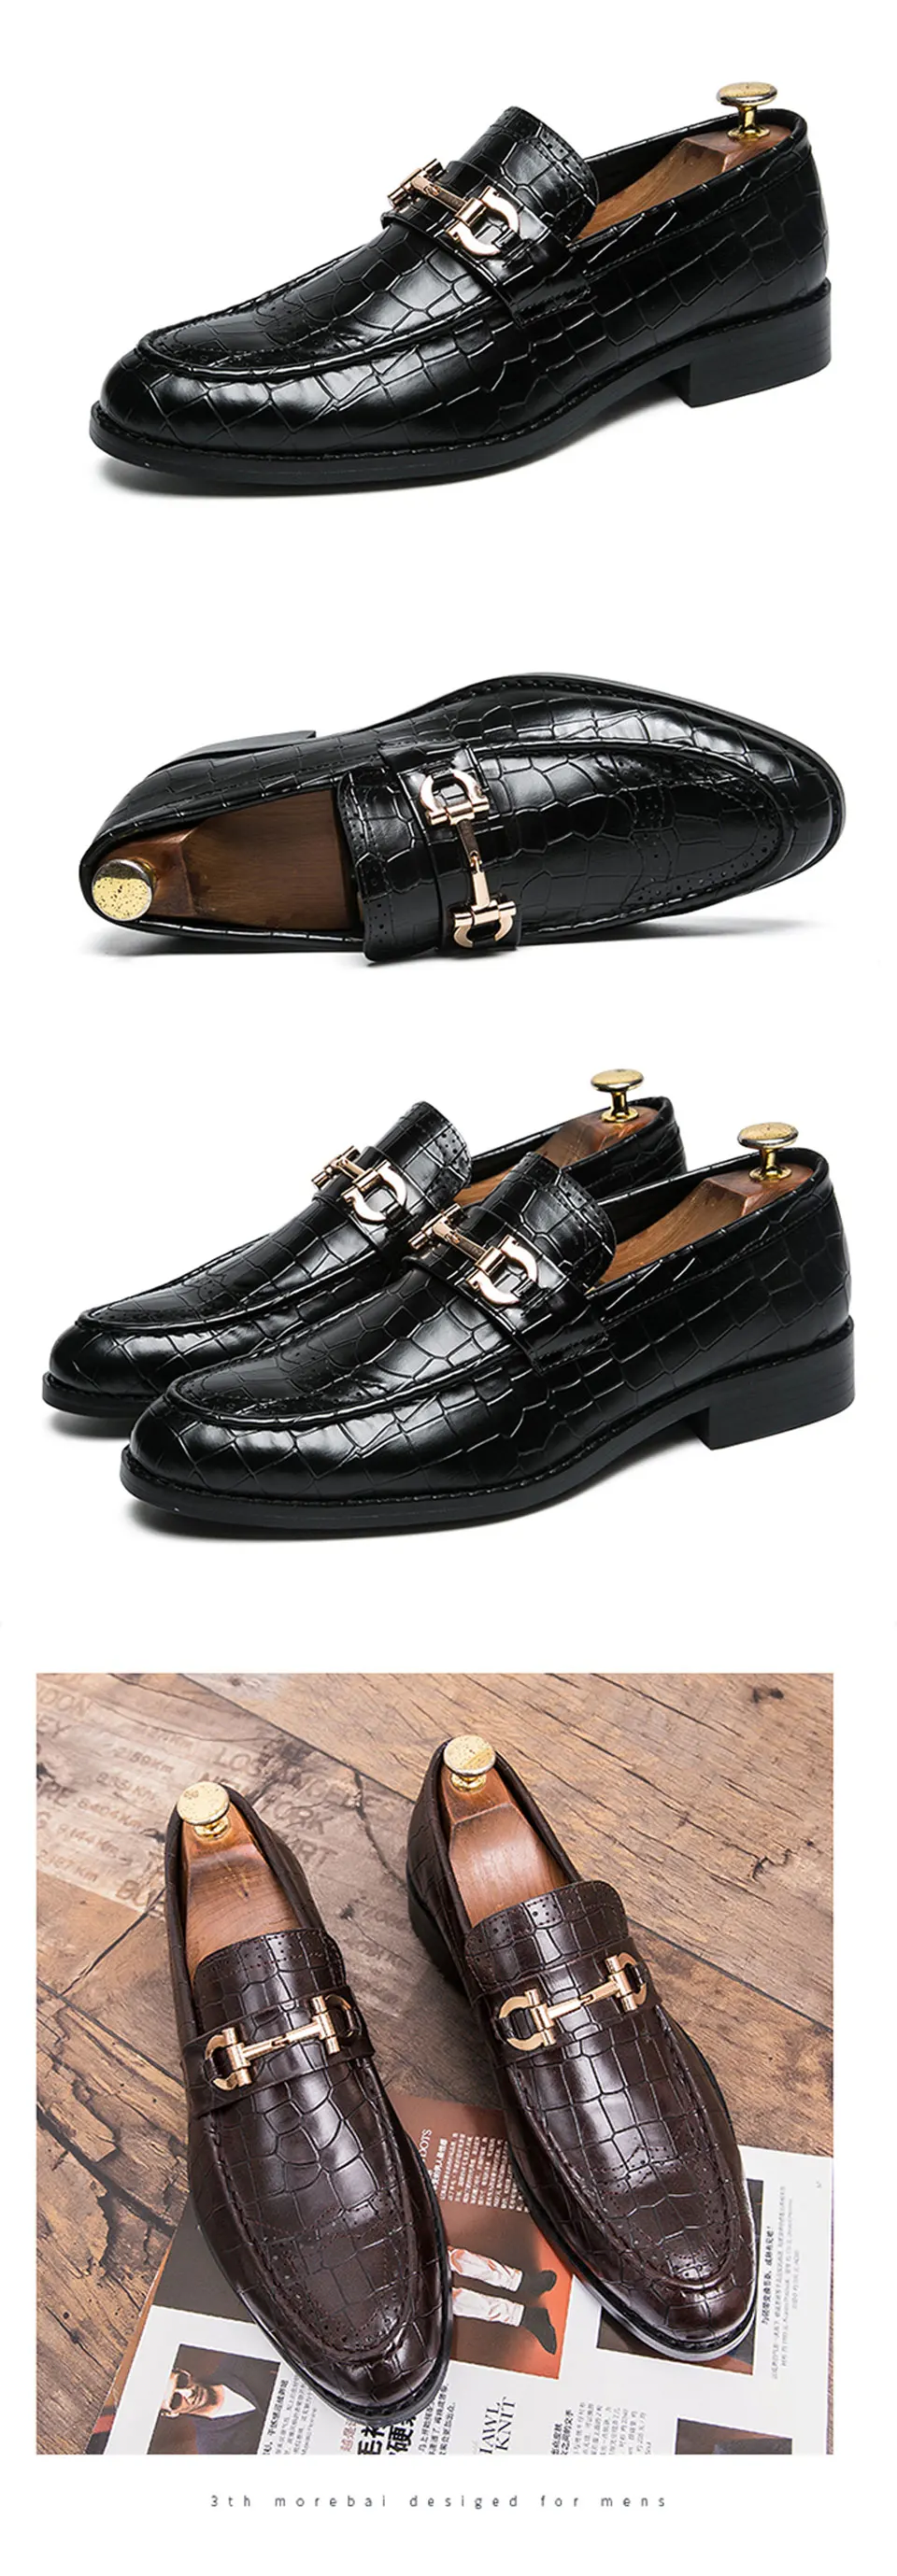 Мужская обувь Формальные модельные туфли Masculino кожа коричневый элегантный роскошный костюм обувь большой размер дропшиппинг Мода Плюс Размер 39-48